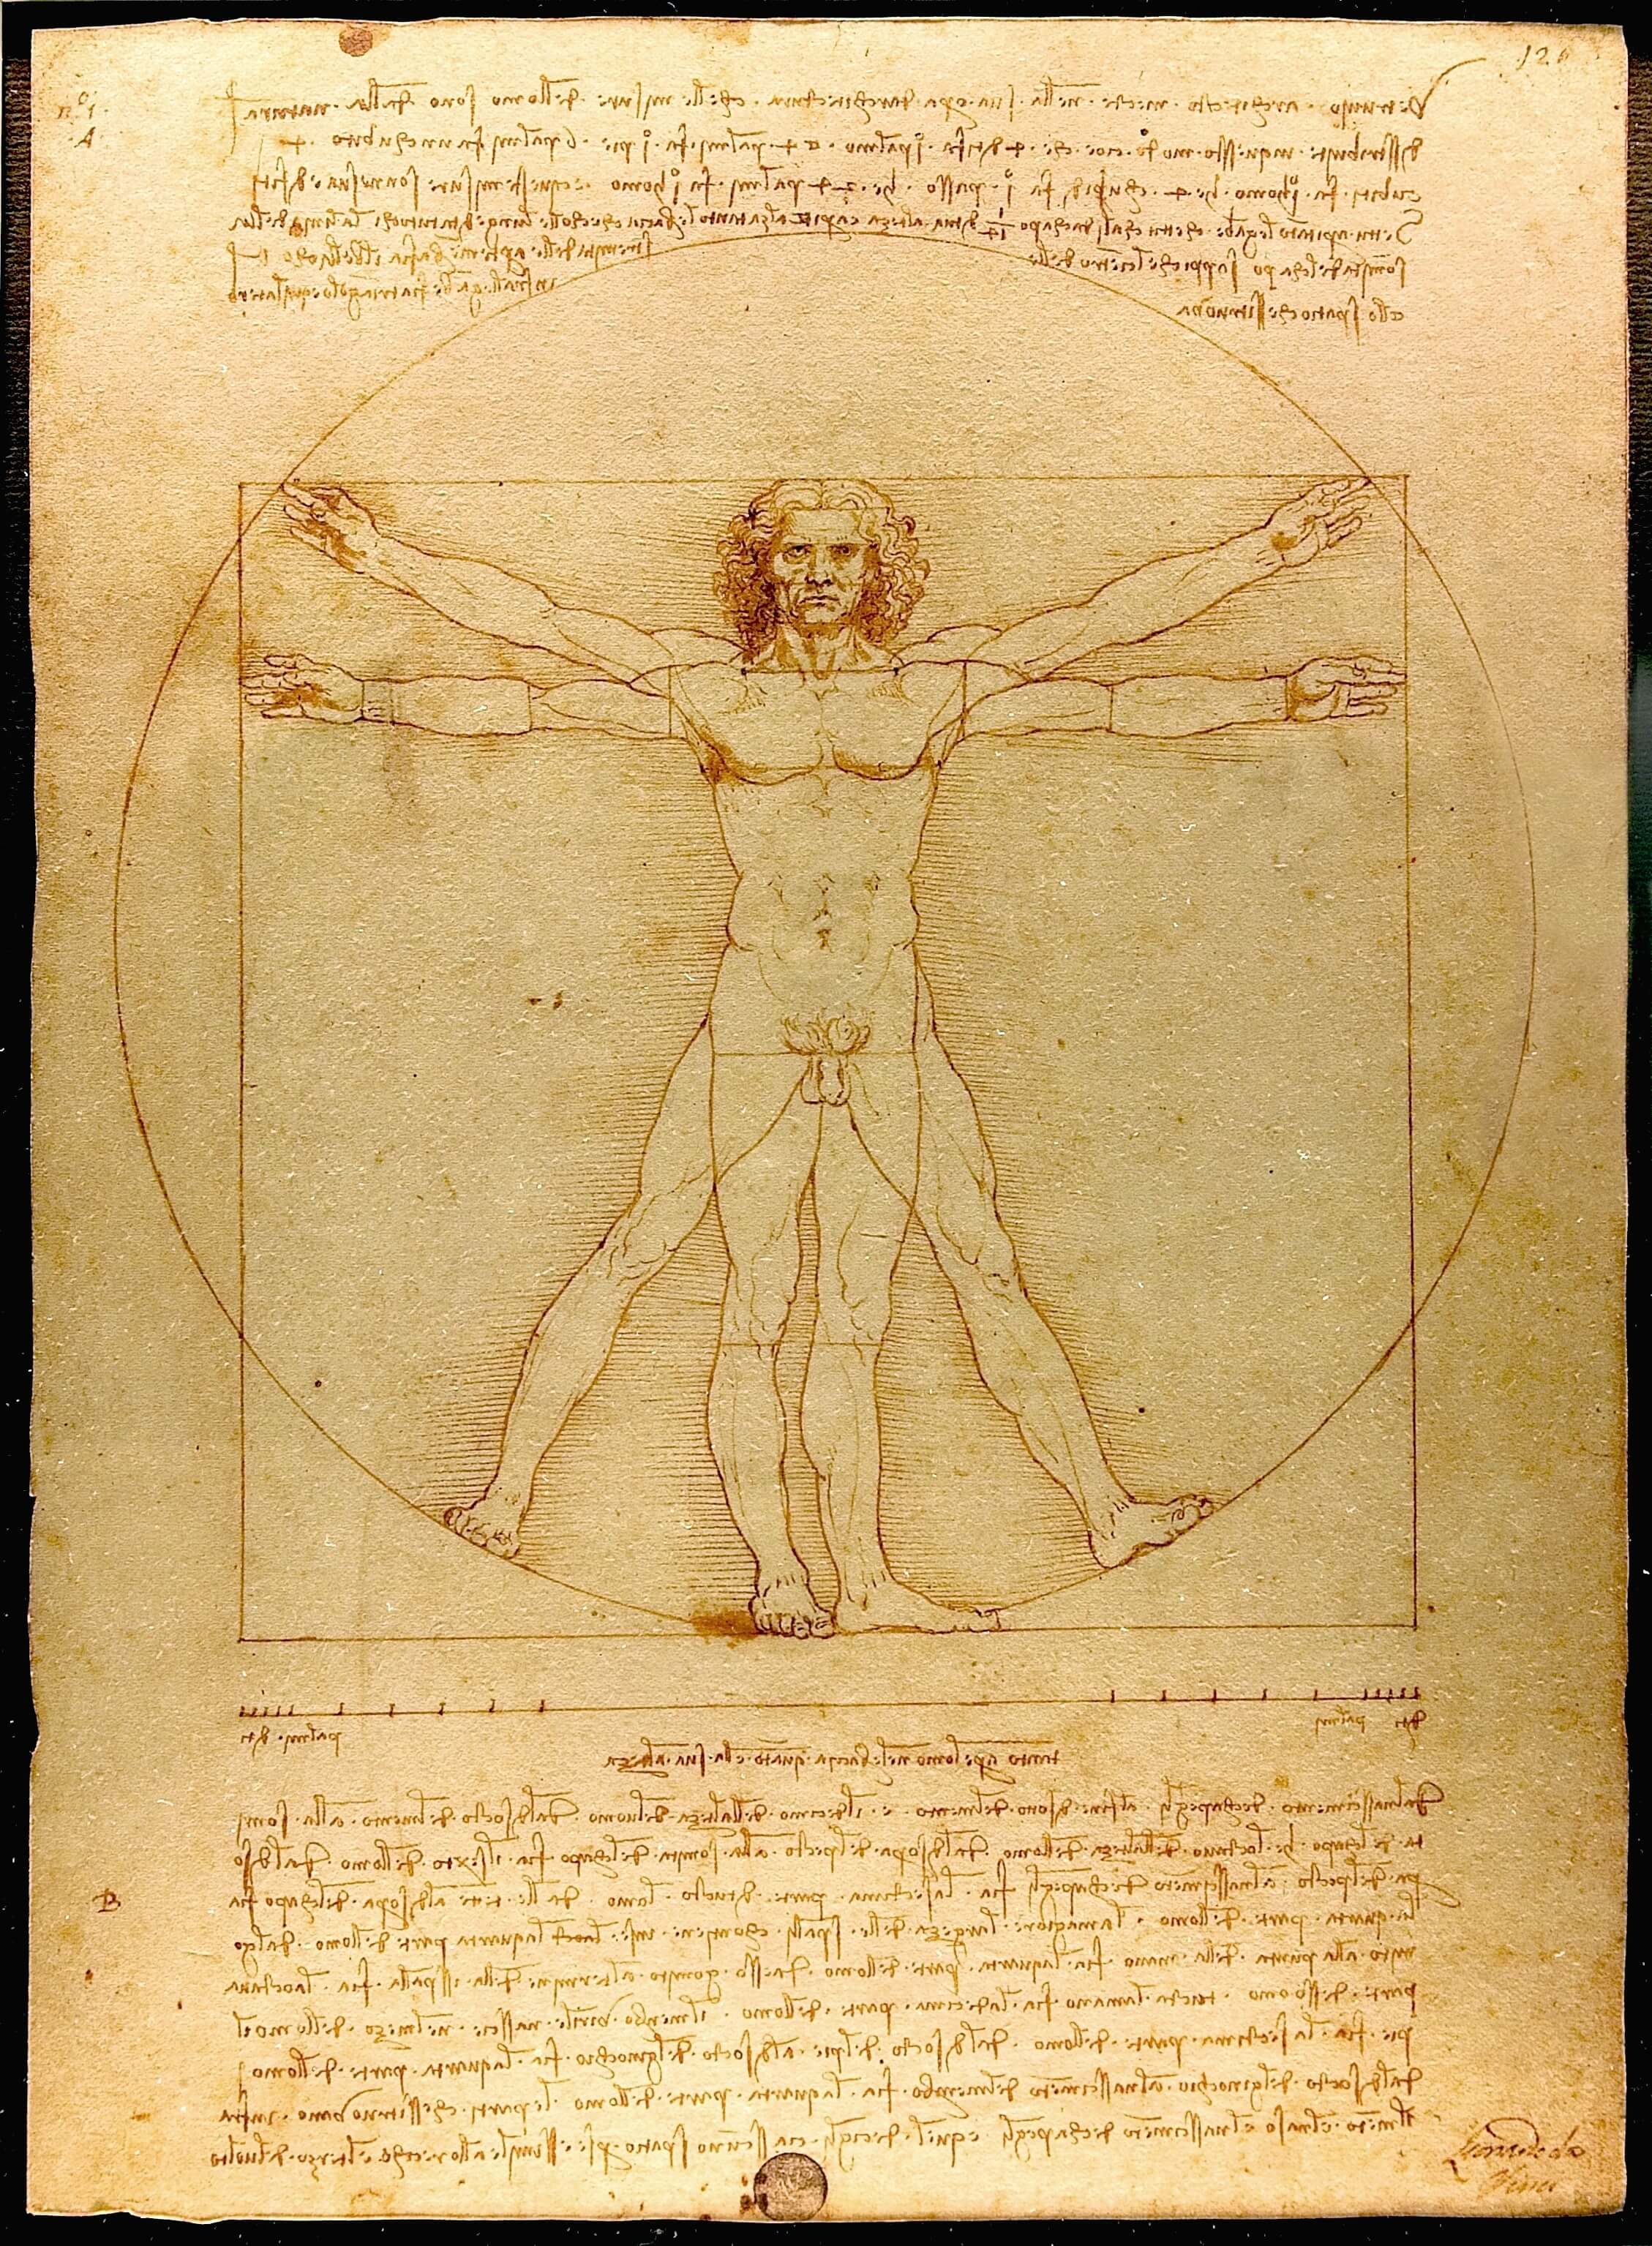 L’homme de Vitruve de Léonard de Vinci est un exemple précurseur de l’opposition entre les STEM et les arts.